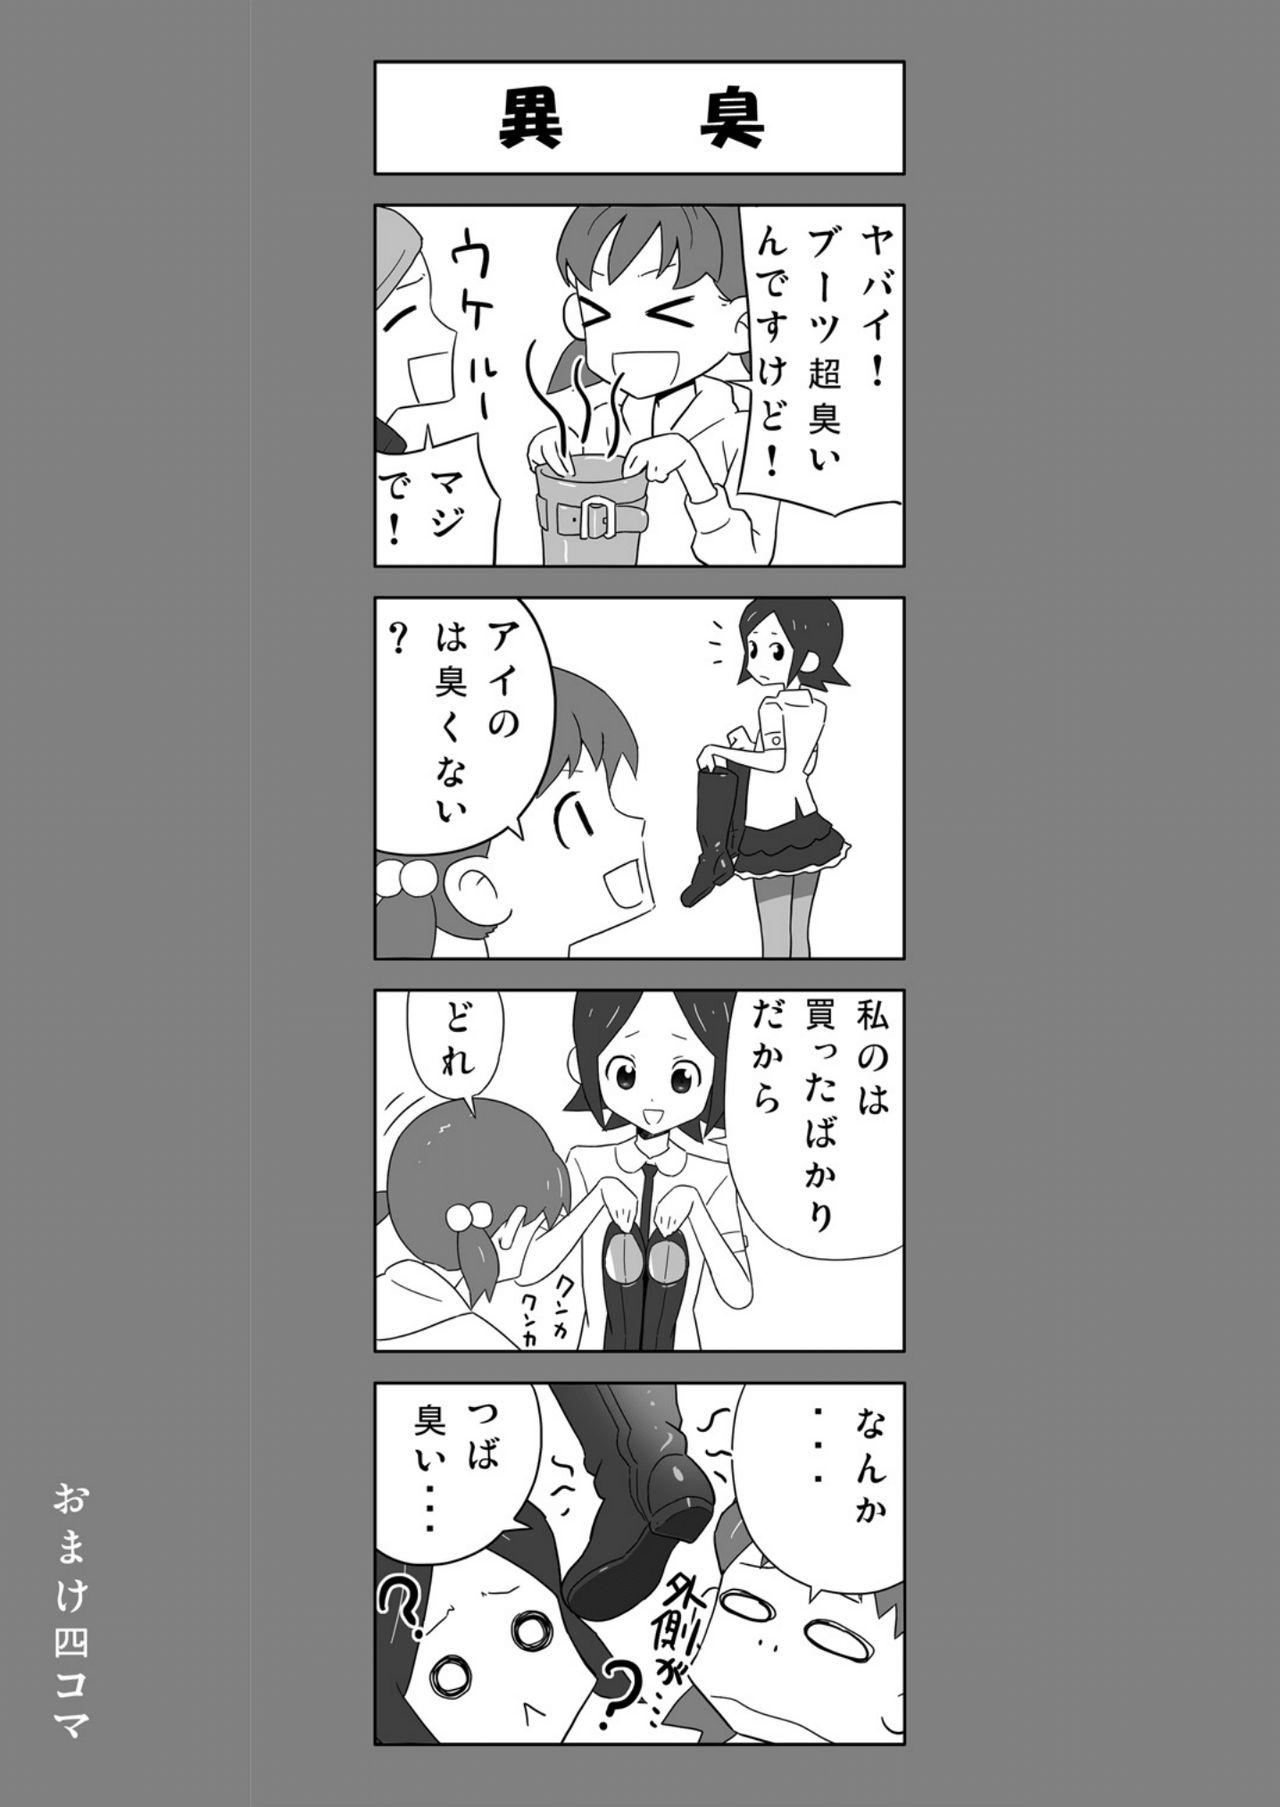 [Enka Boots] Enka Boots no Manga 1 - Juku no Sensei ga Joou-sama V4.0 3